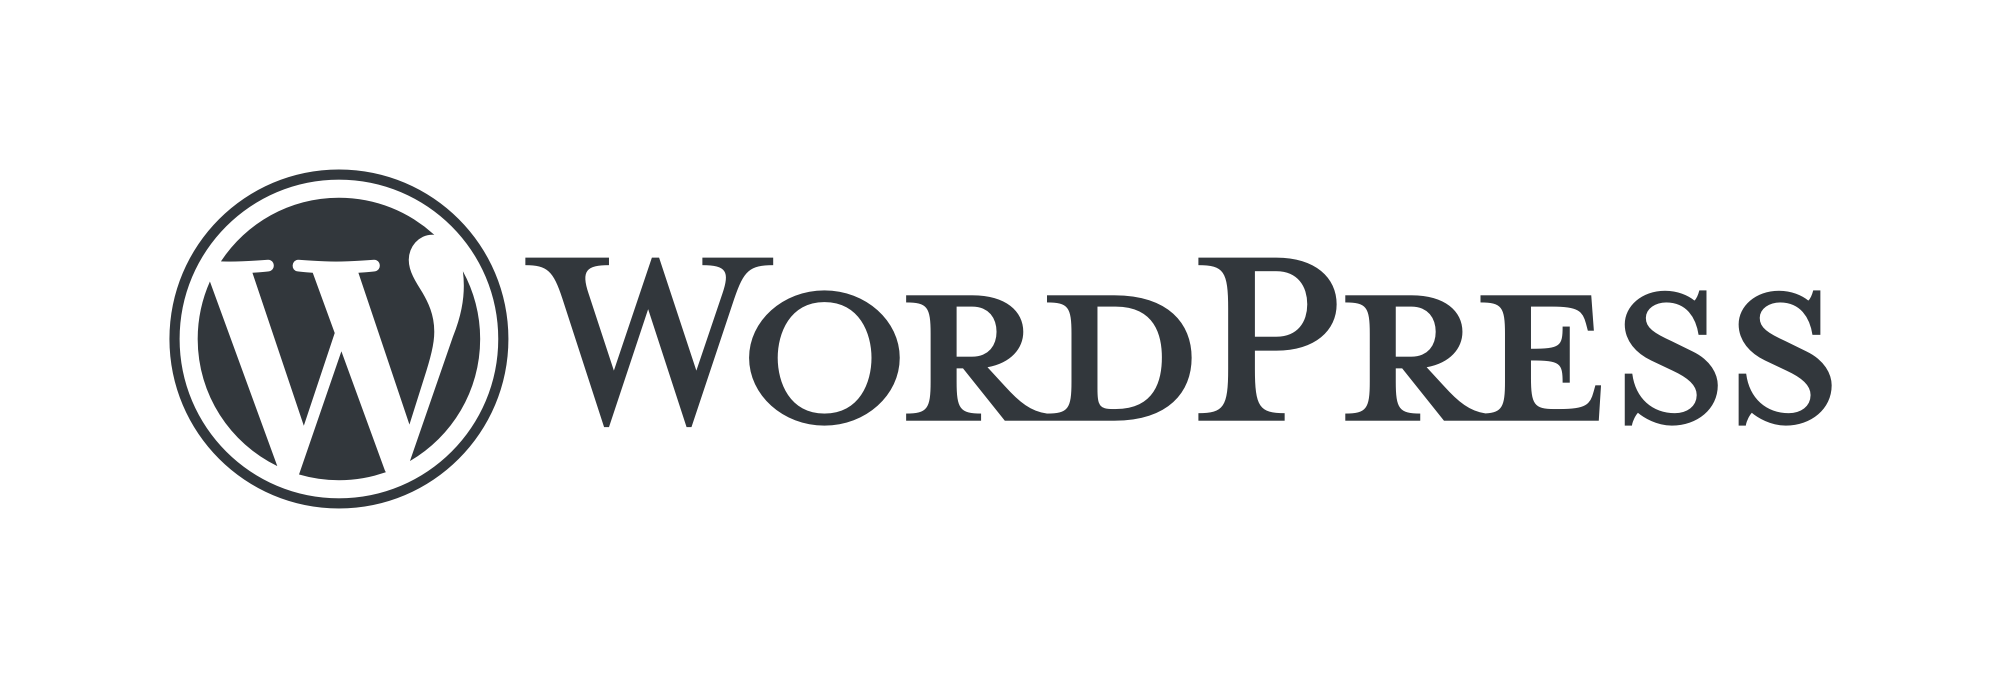 Sites desenvolvidos em WordPress